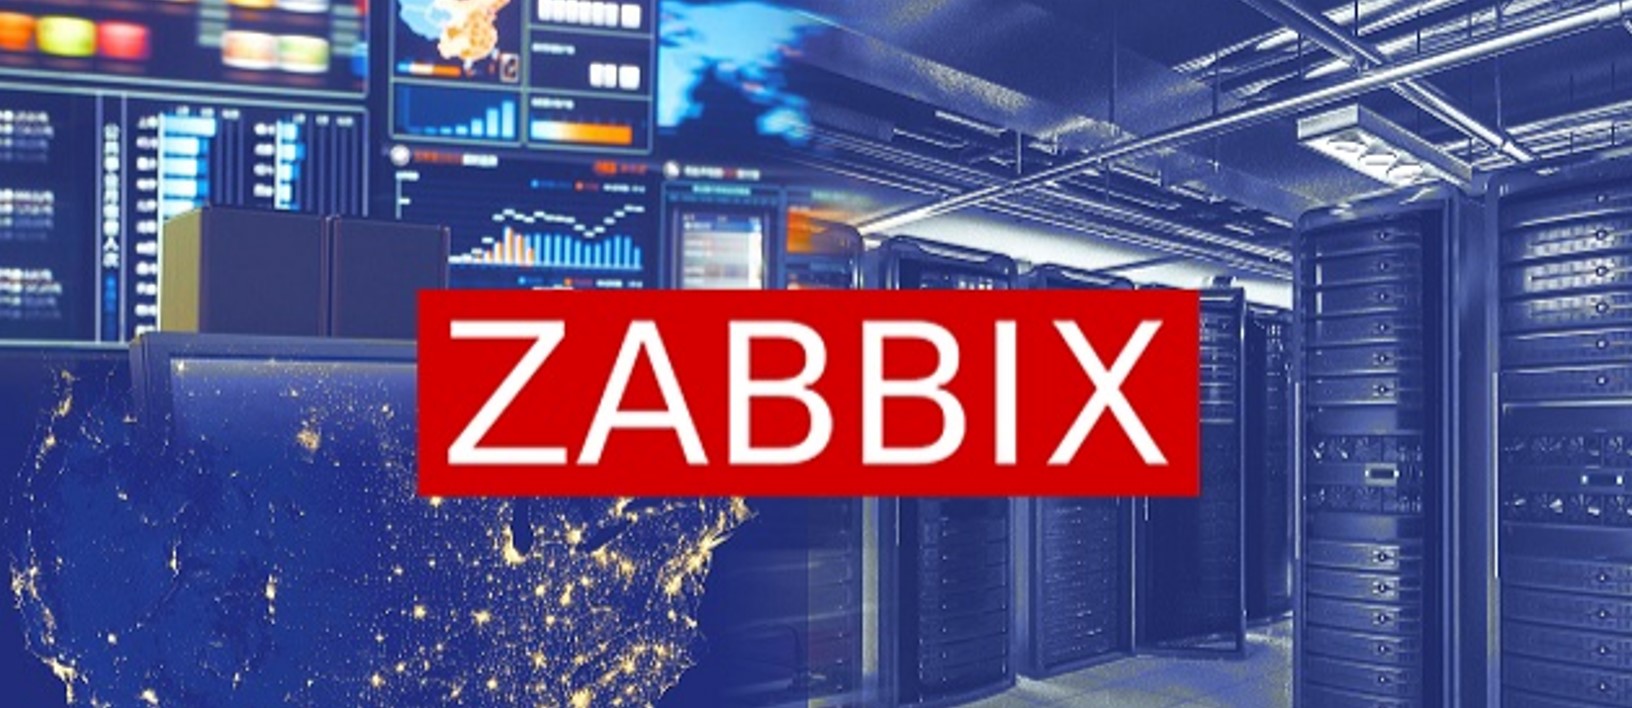 Zabbix与乐维监控对比分析（三）——对象管理篇